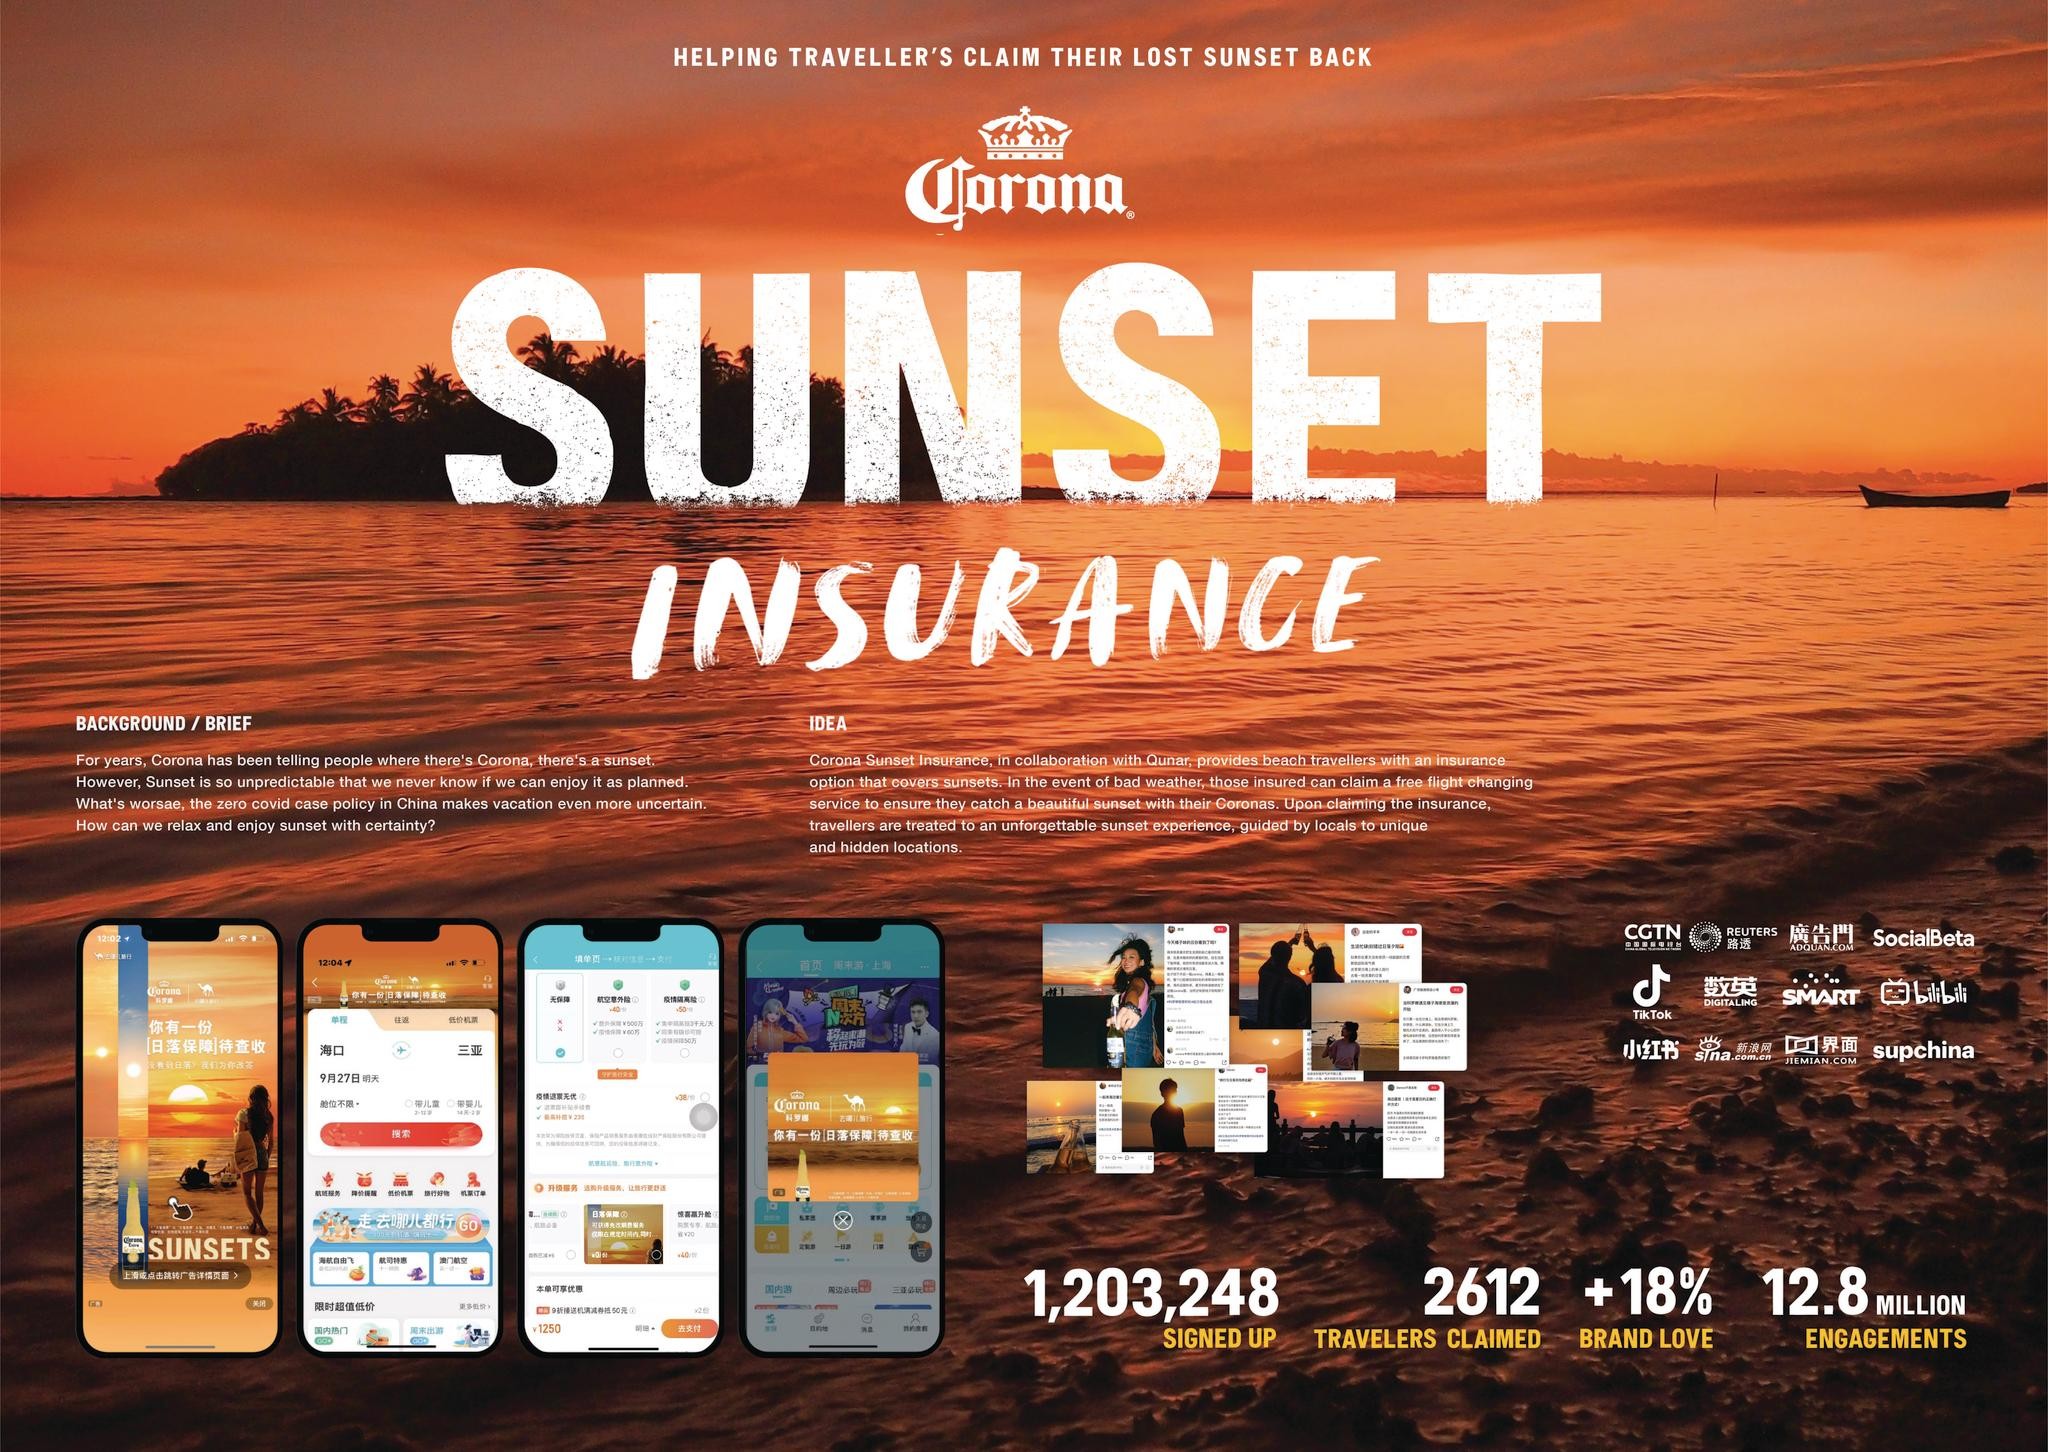 Corona Sunset Insurance